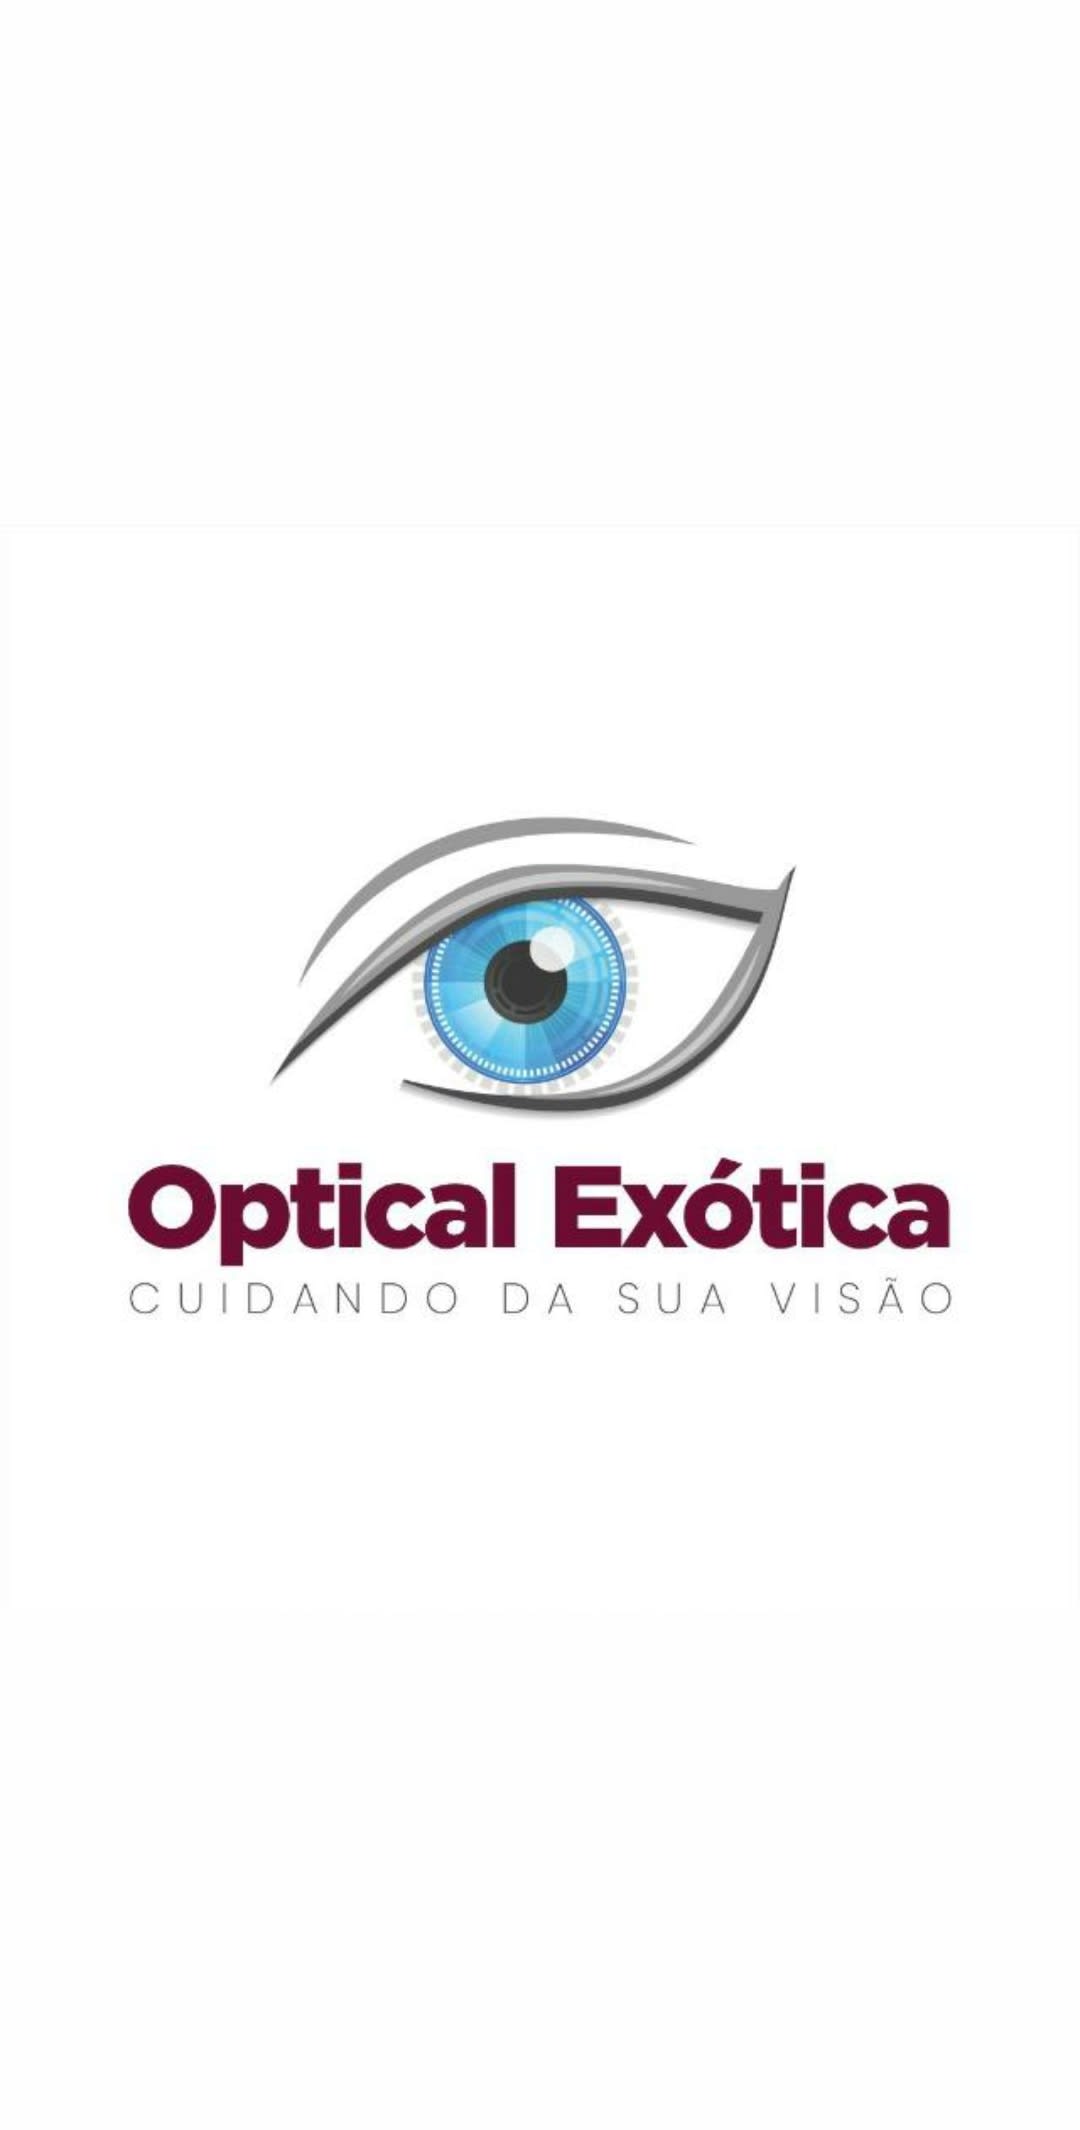 Óptical Exotica